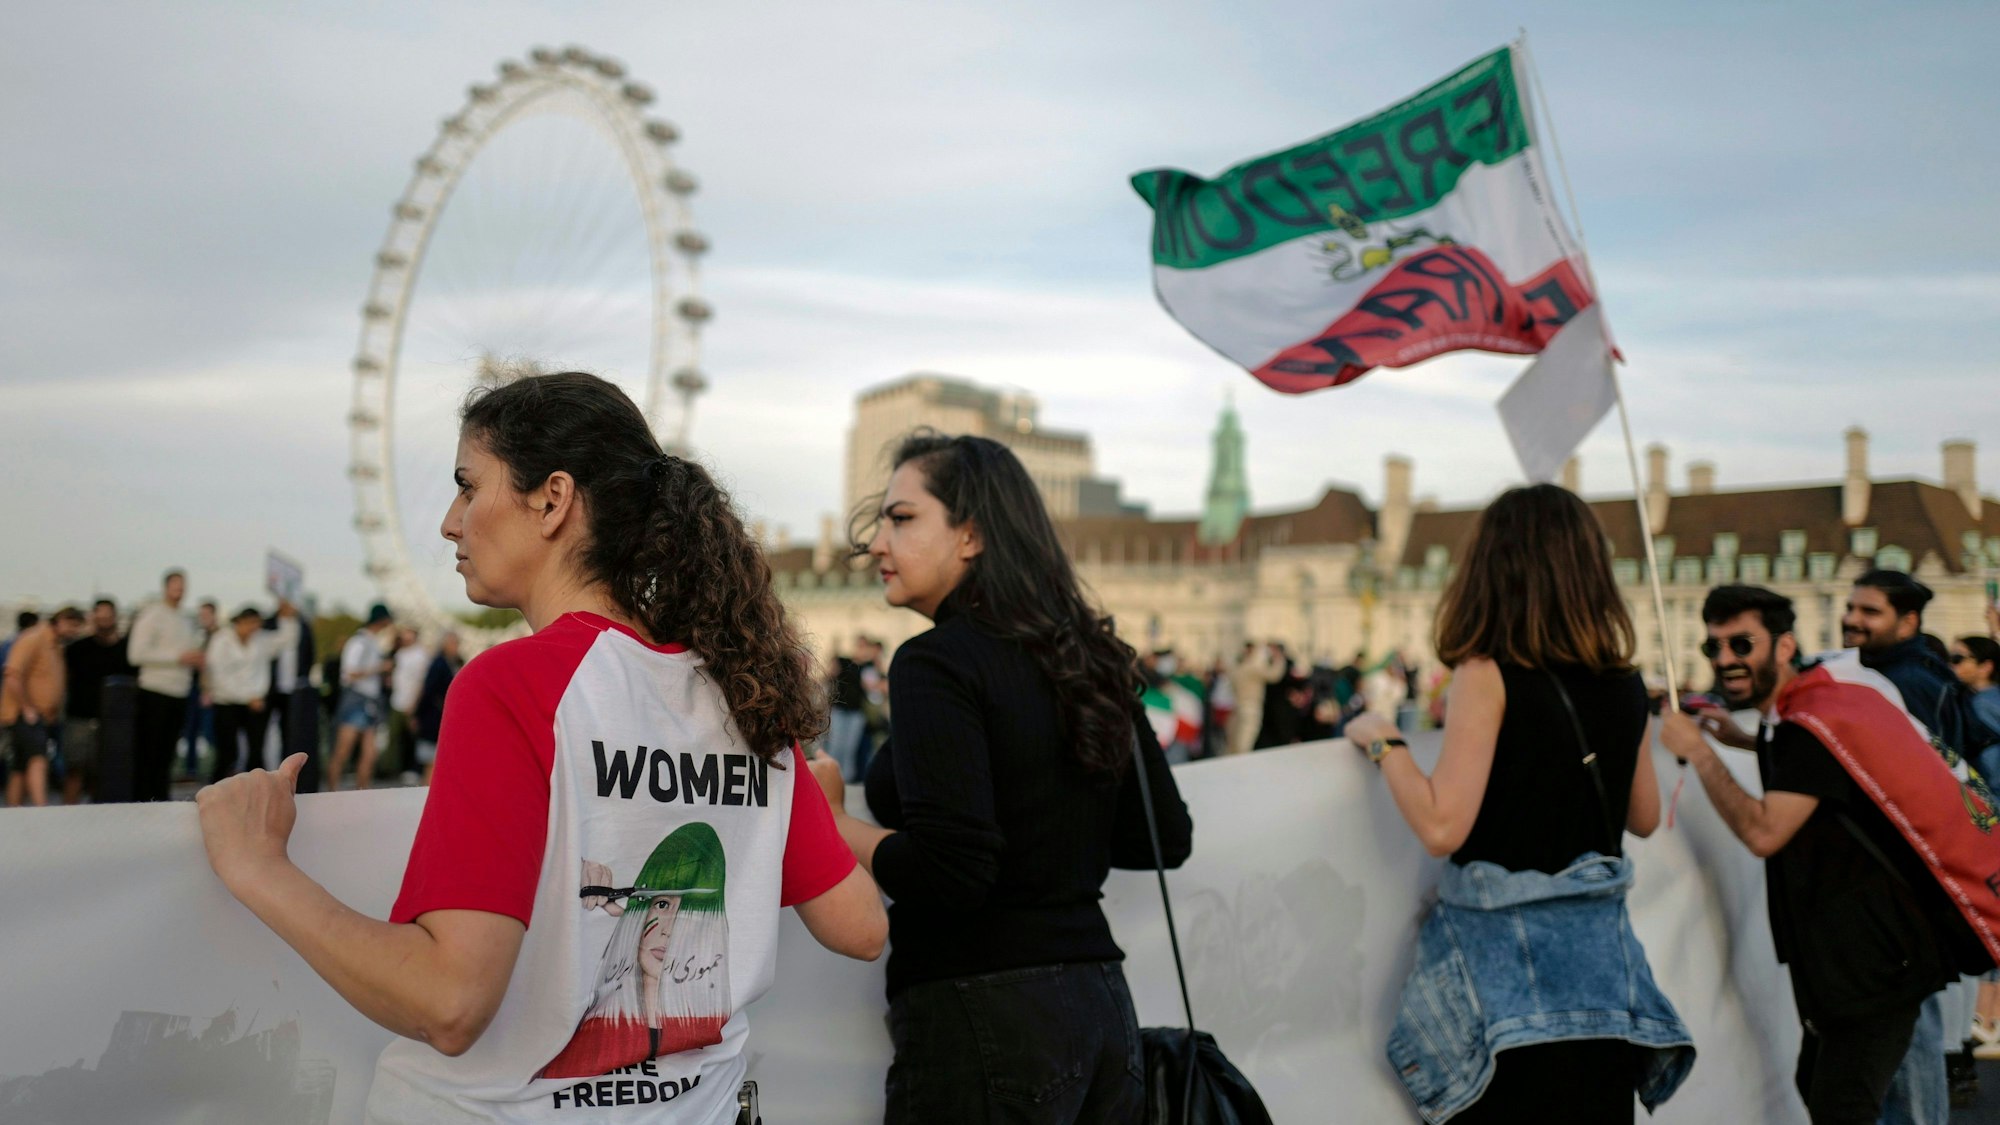 Demonstrierende halten in London Banner und Iran-Flaggen, um sich mit den Frauen im Iran zu solidarisieren. Auf dem T-Shirt einer Frau steht „Women - Freedom“. Im Hintergrund ist das London-Eye zu sehen.